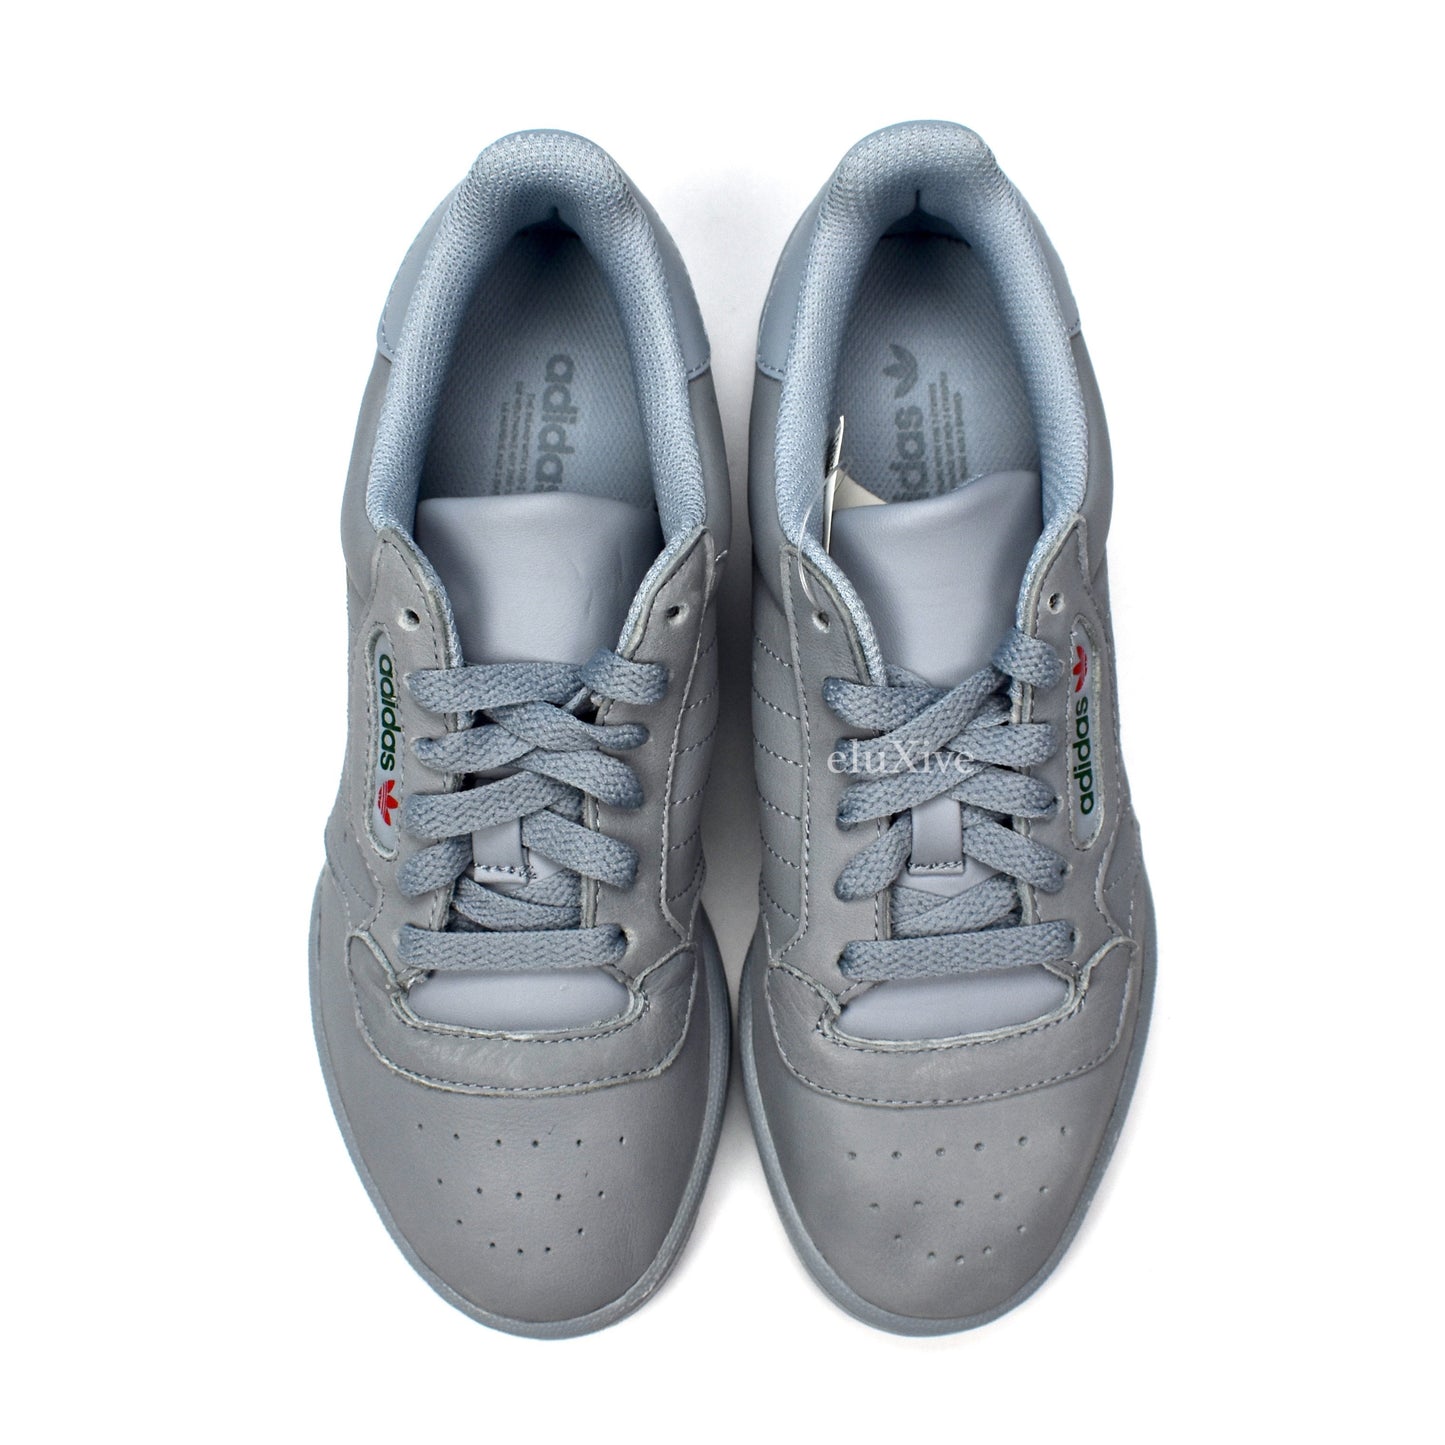 Adidas x Kanye West - Yeezy Powerphase (Gray)